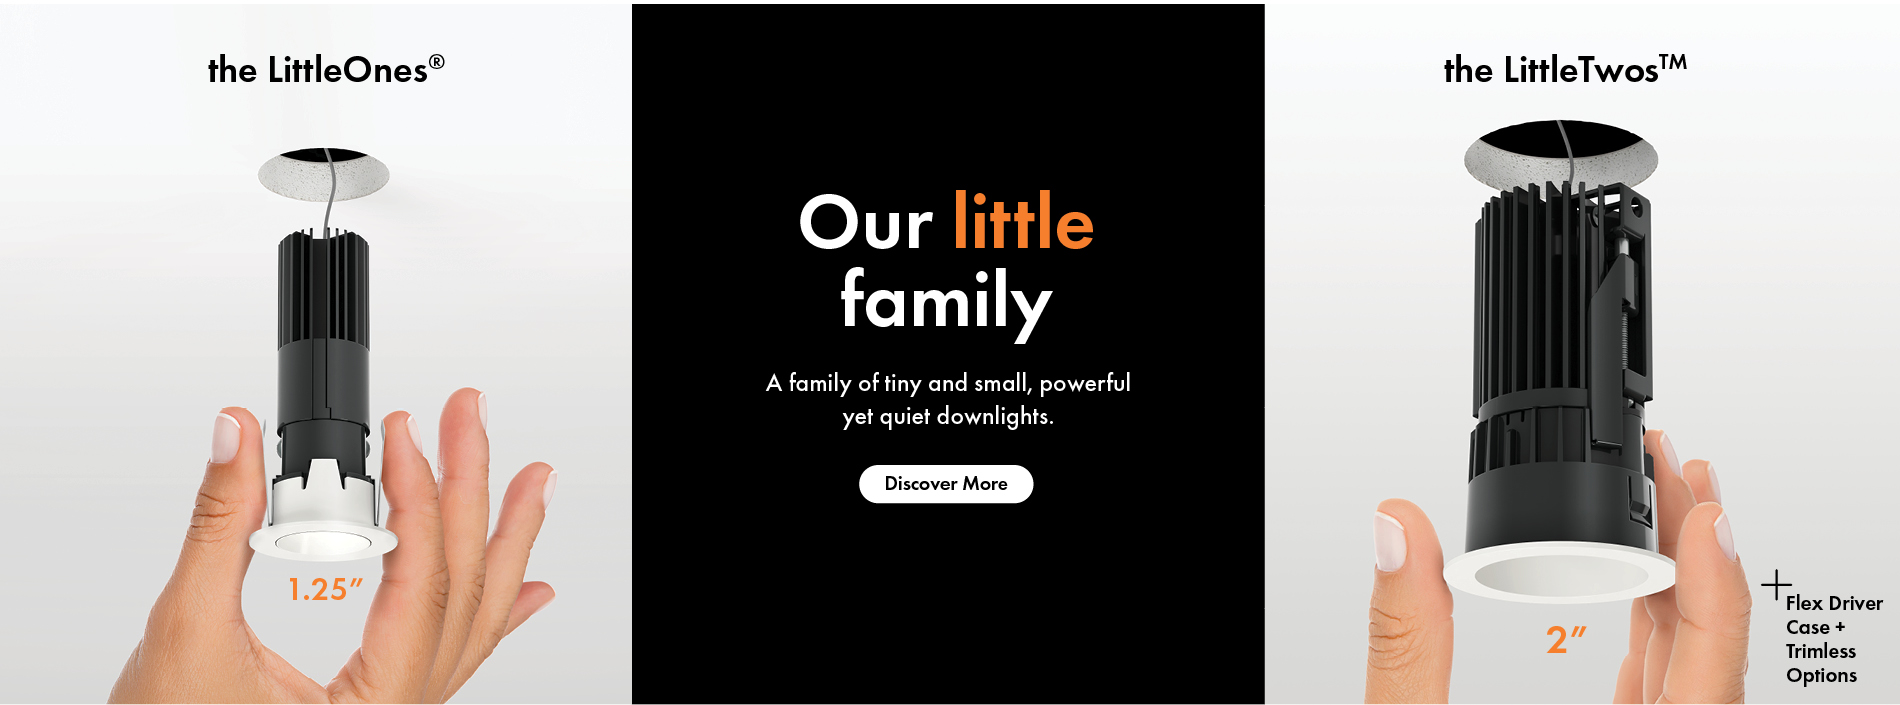 LittleTwos 2 Inch Downlight Family Slide 1